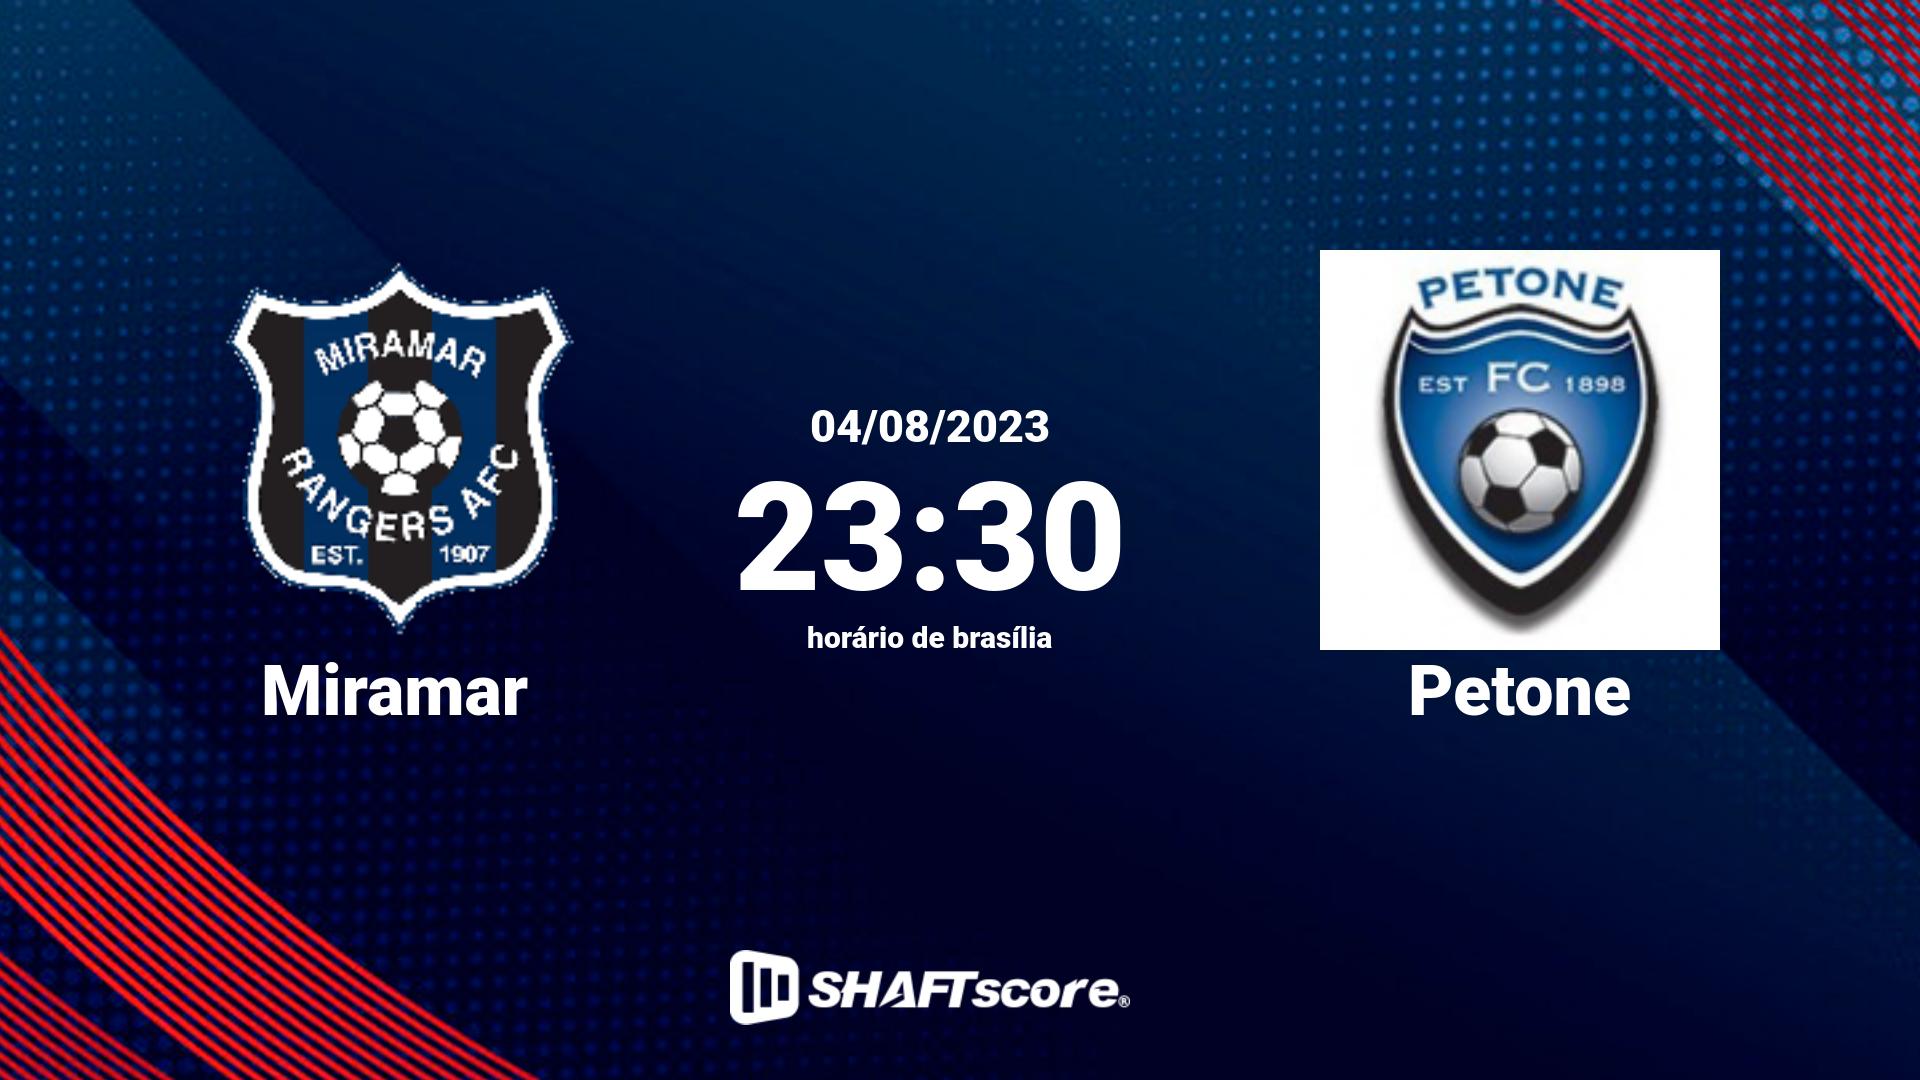 Estatísticas do jogo Miramar vs Petone 04.08 23:30